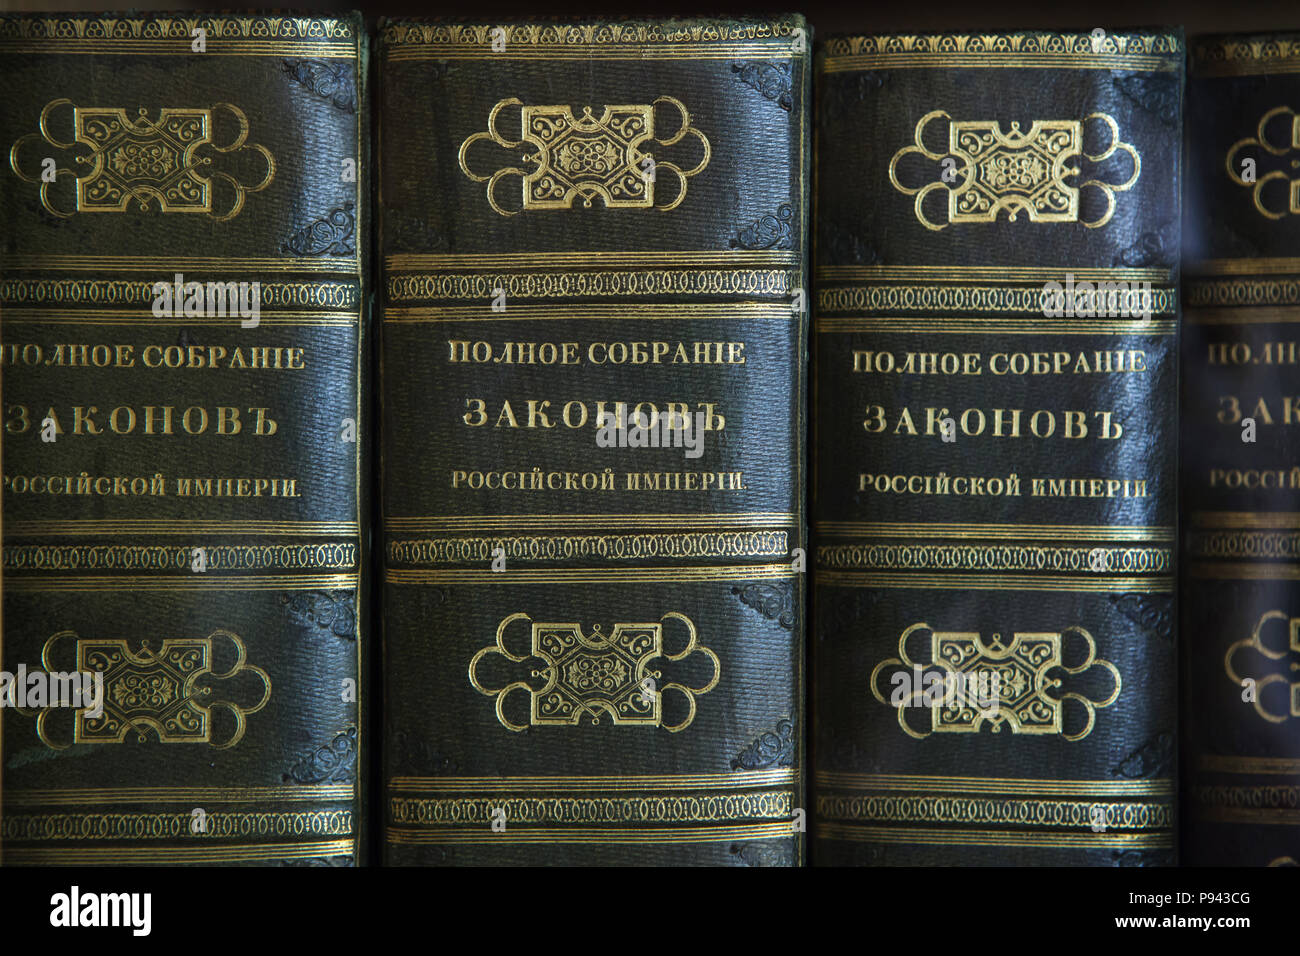 Komplette Sammlung von Gesetzen des Russischen Imperiums in die Bibliothek des Zaren Nikolaus II. im Winter Palace in St. Petersburg, Russland. Stockfoto